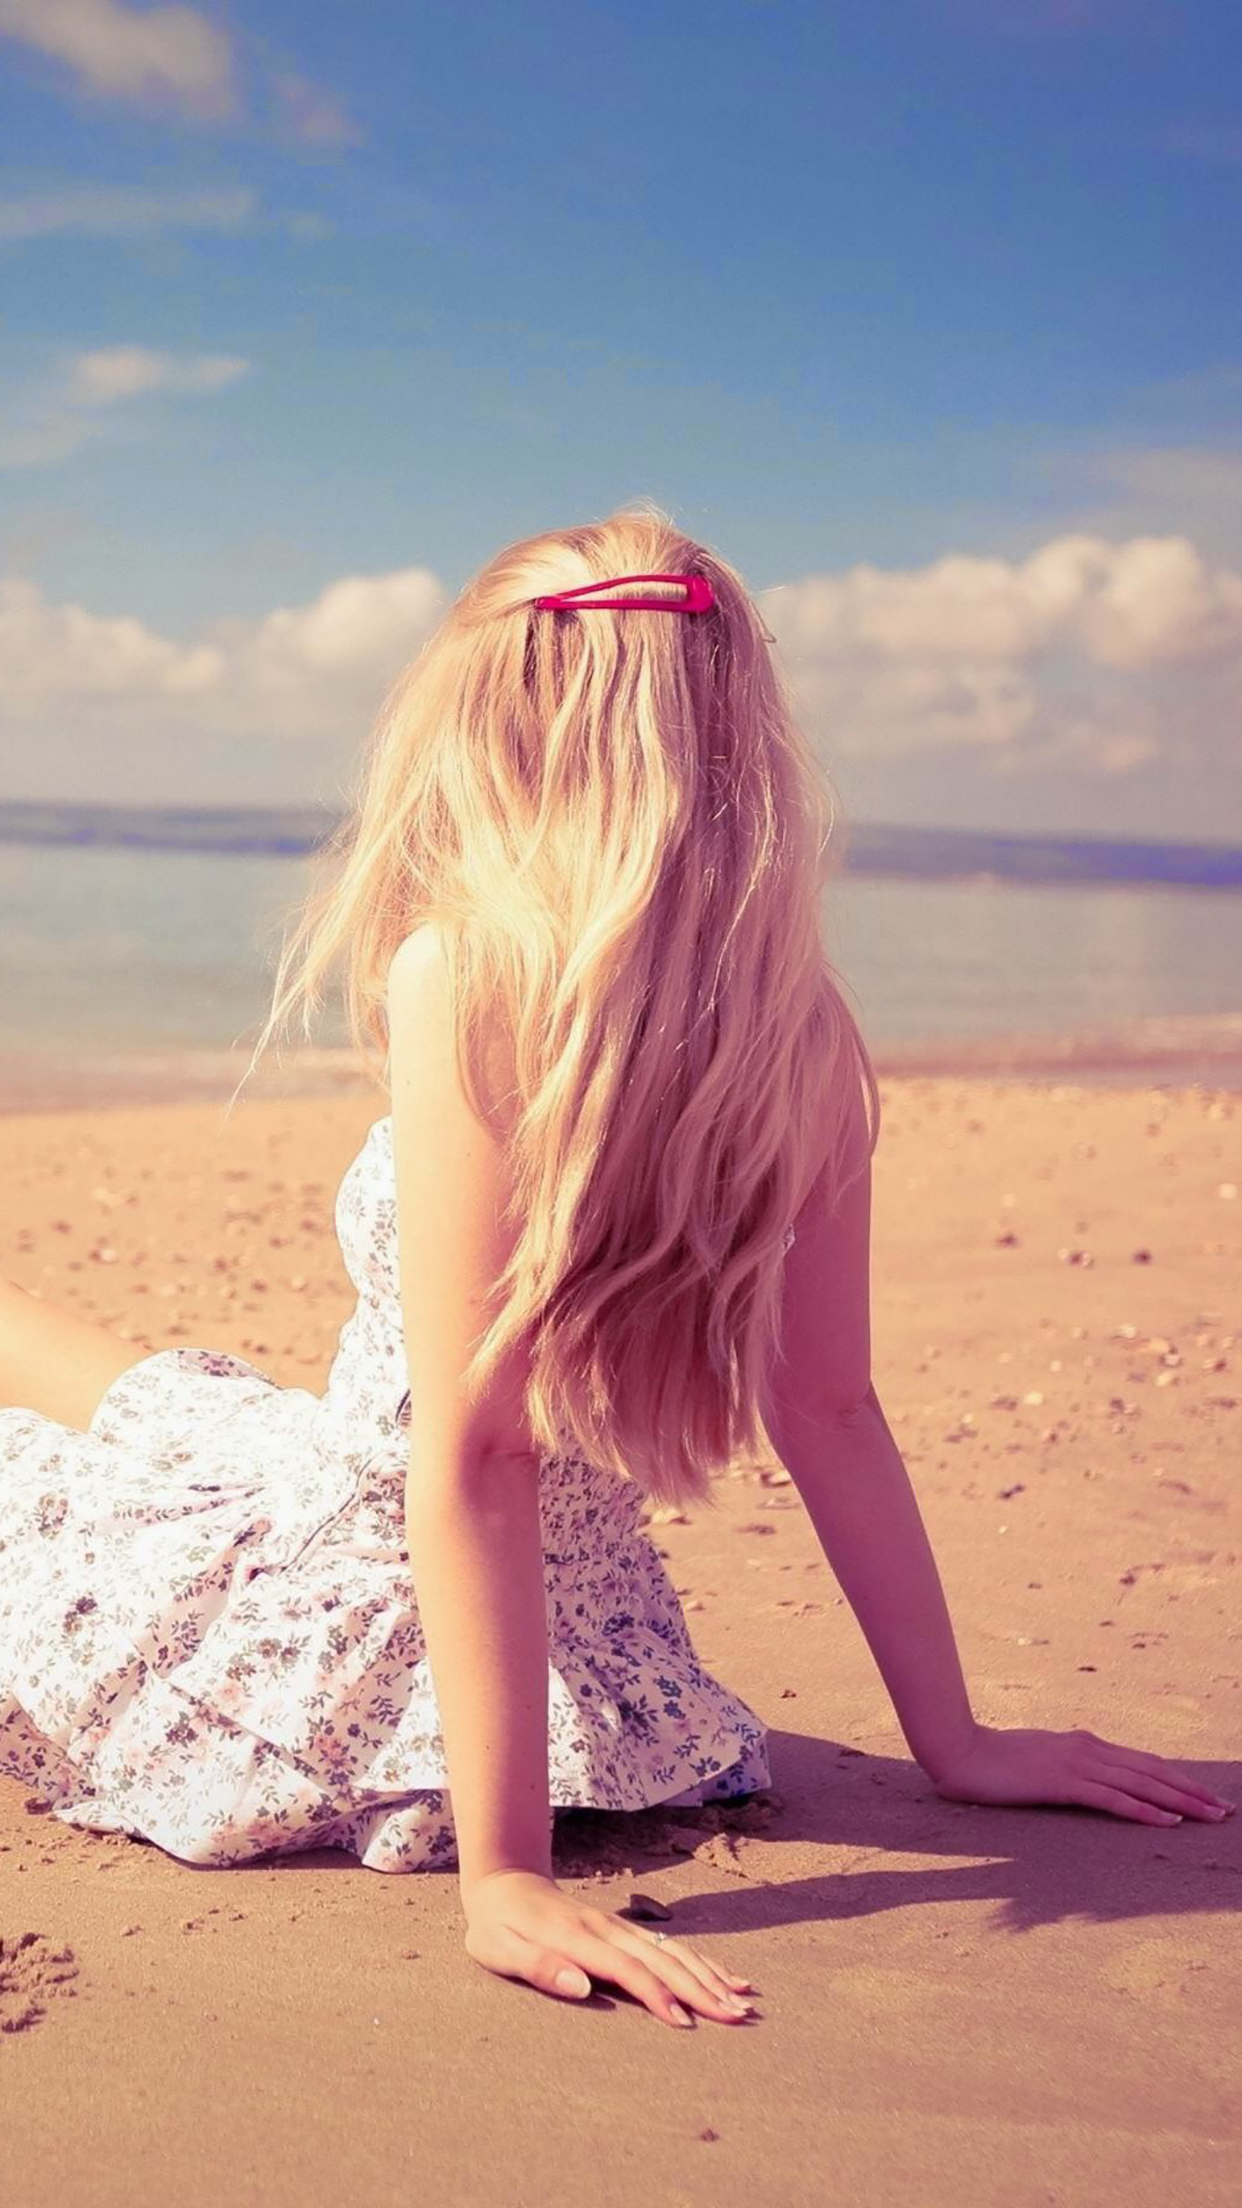 해변 소녀 벽지,금발,아름다움,분홍,햇빛,여름